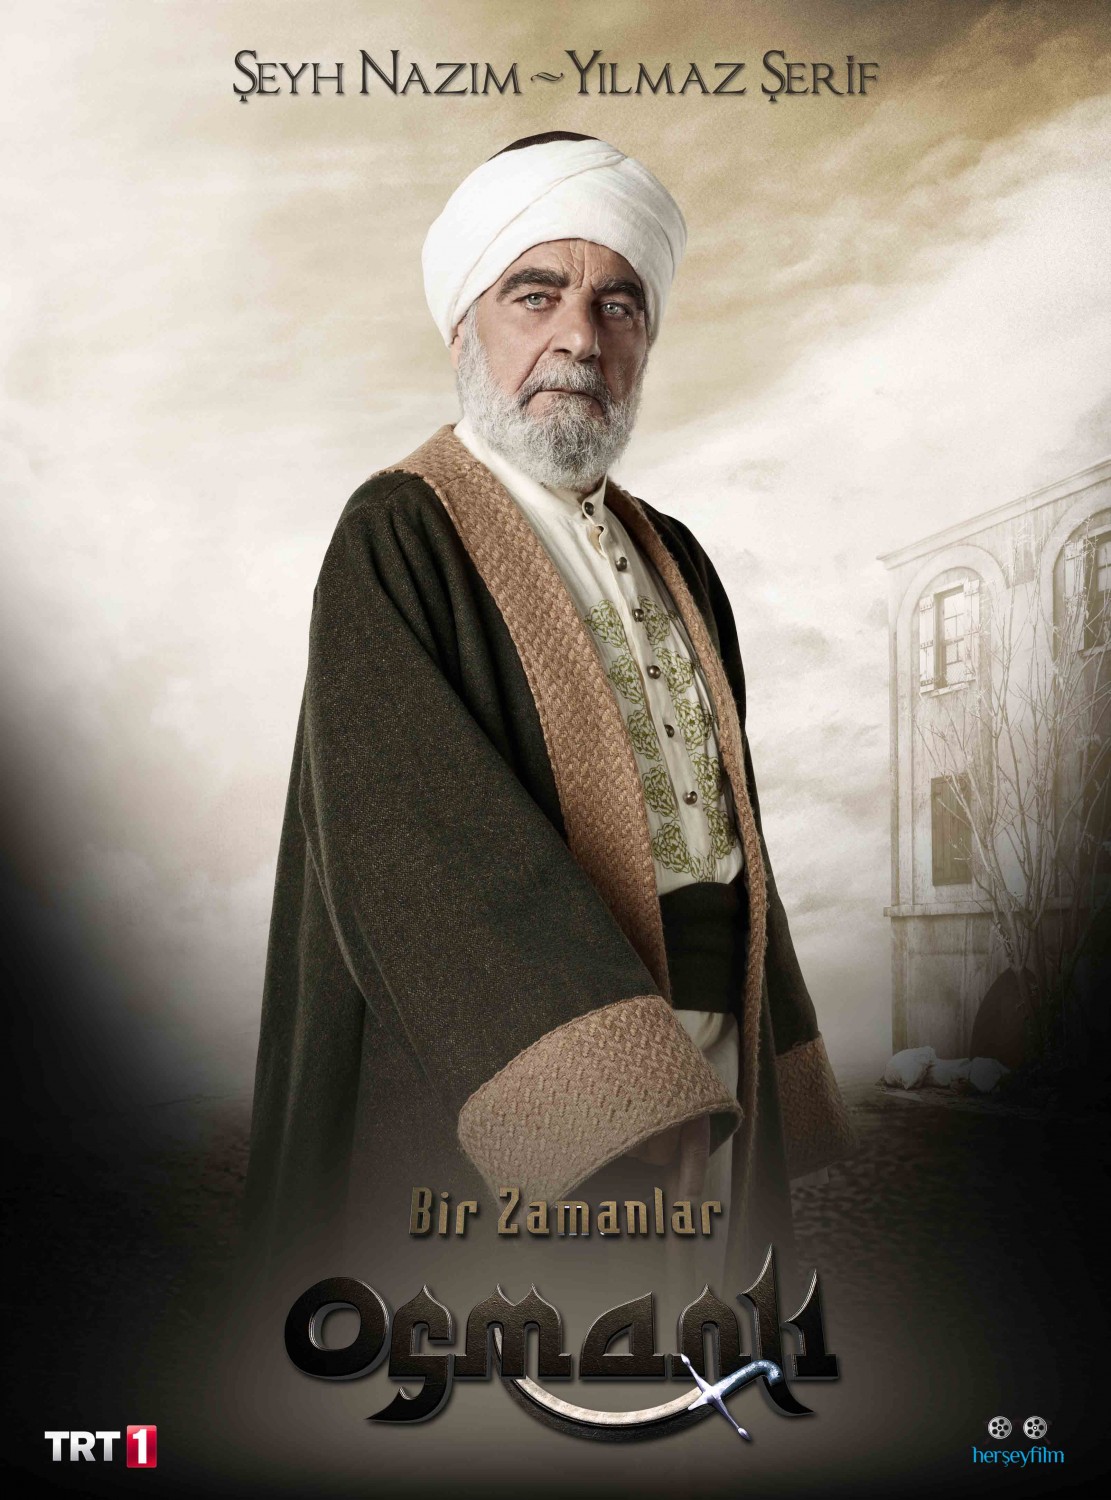 Extra Large TV Poster Image for Bir Zamanlar Osmanli Kiyam (#21 of 26)